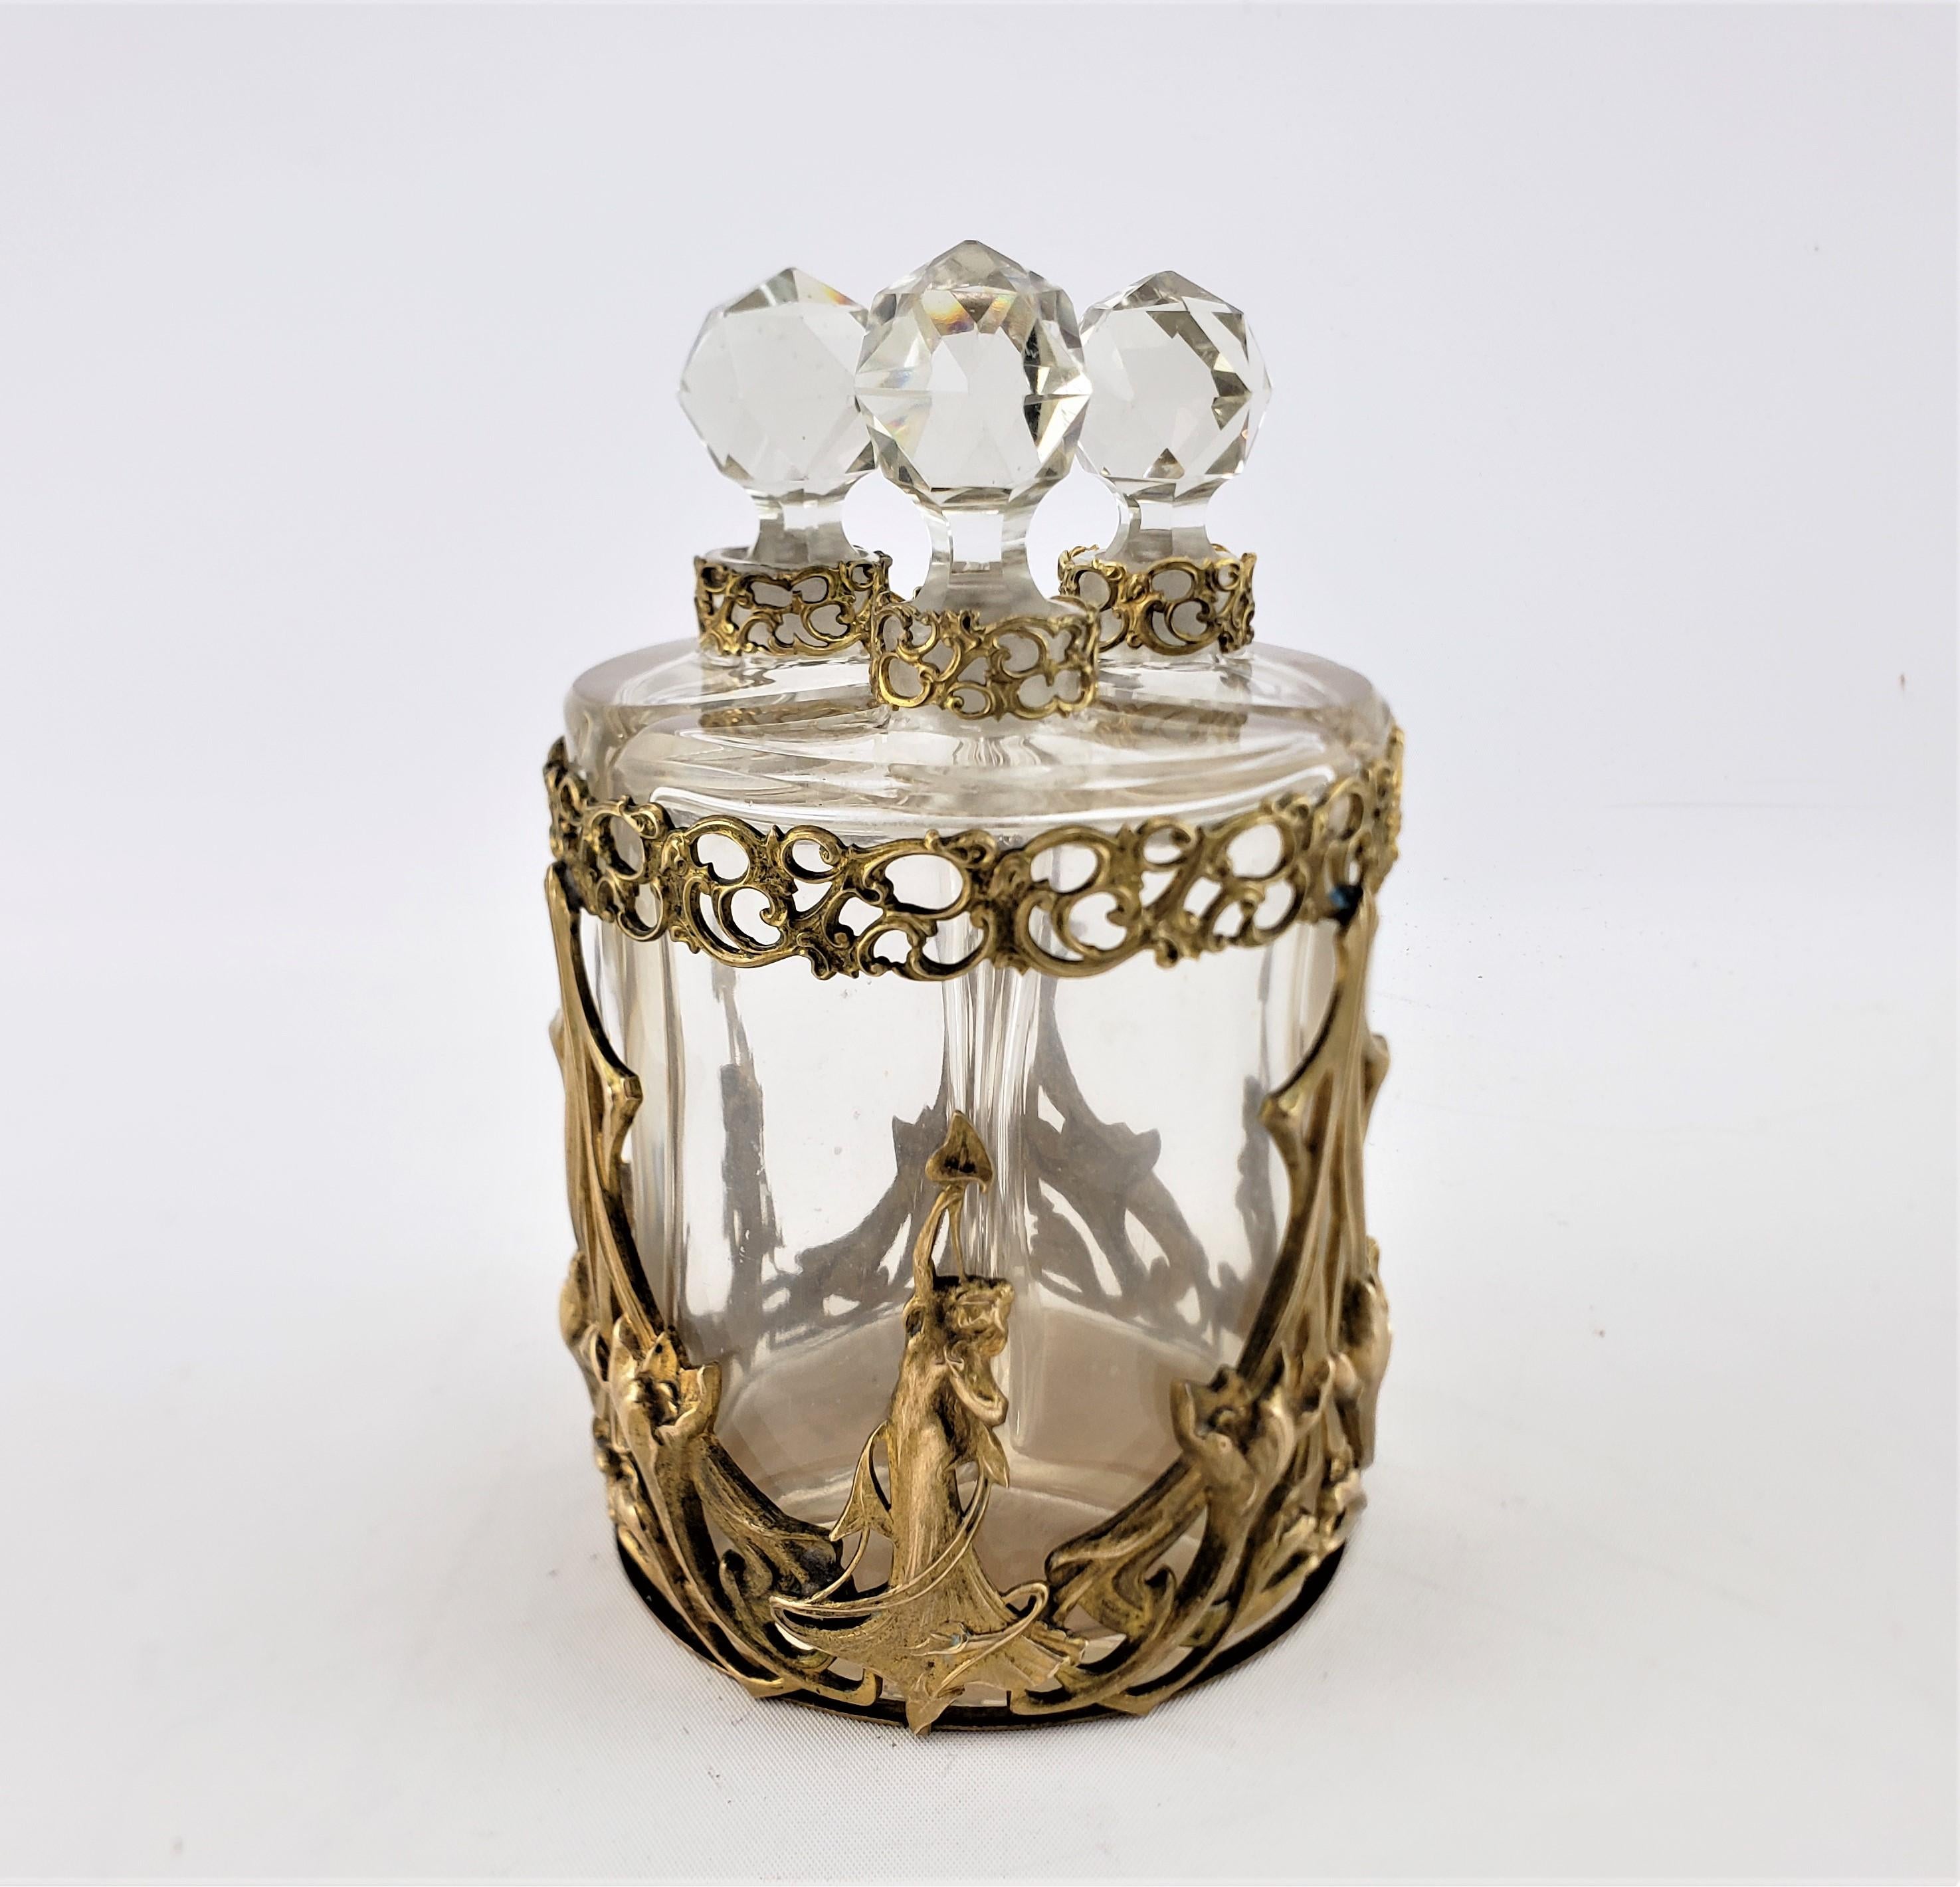 Cet ensemble de flacons de parfum anciens n'est pas signé, mais on présume qu'il provient de France et date d'environ 1900. Il est réalisé dans le style Art nouveau de l'époque. L'ensemble est composé d'un chariot ou d'un support en bronze doré